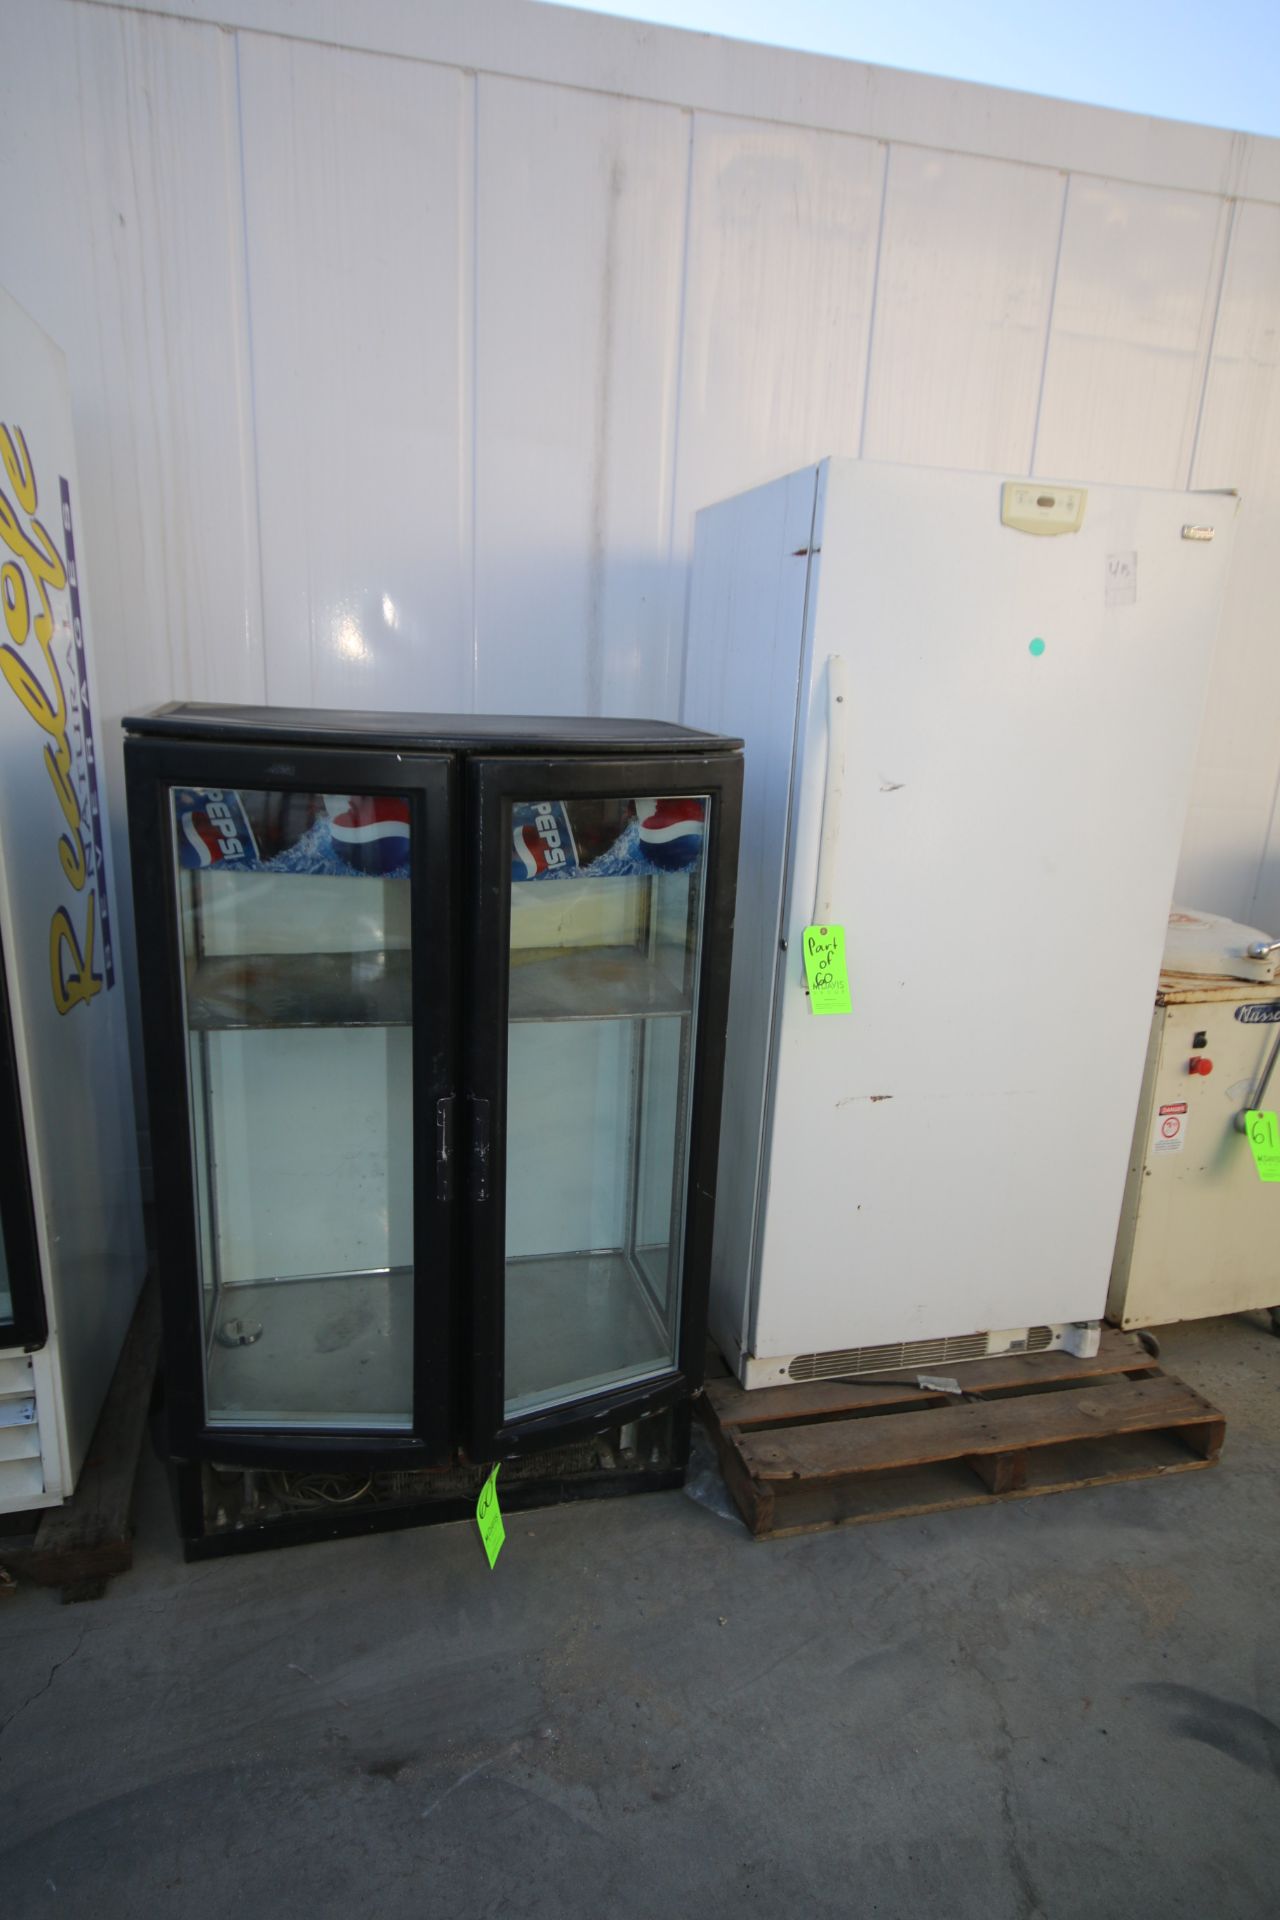 Pepsi 2-Door Refrigerator, with 2-Glass Display Doors and (1) Kenmore Elite Refrigerator